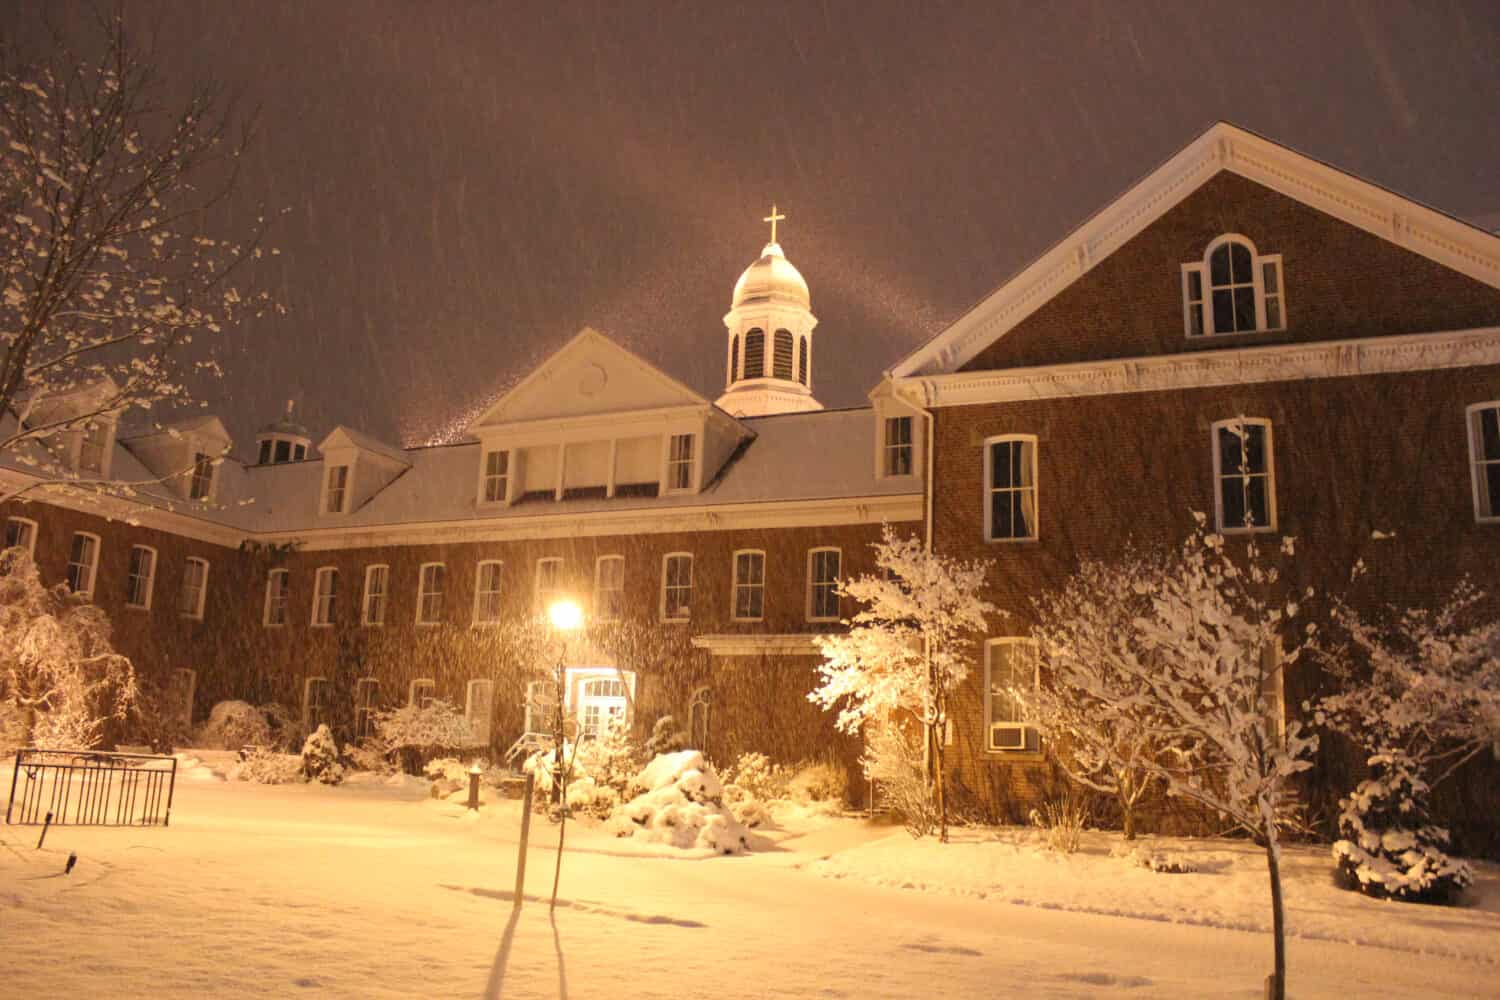 St. Francis Xavier University- Xavier Hall in Winter